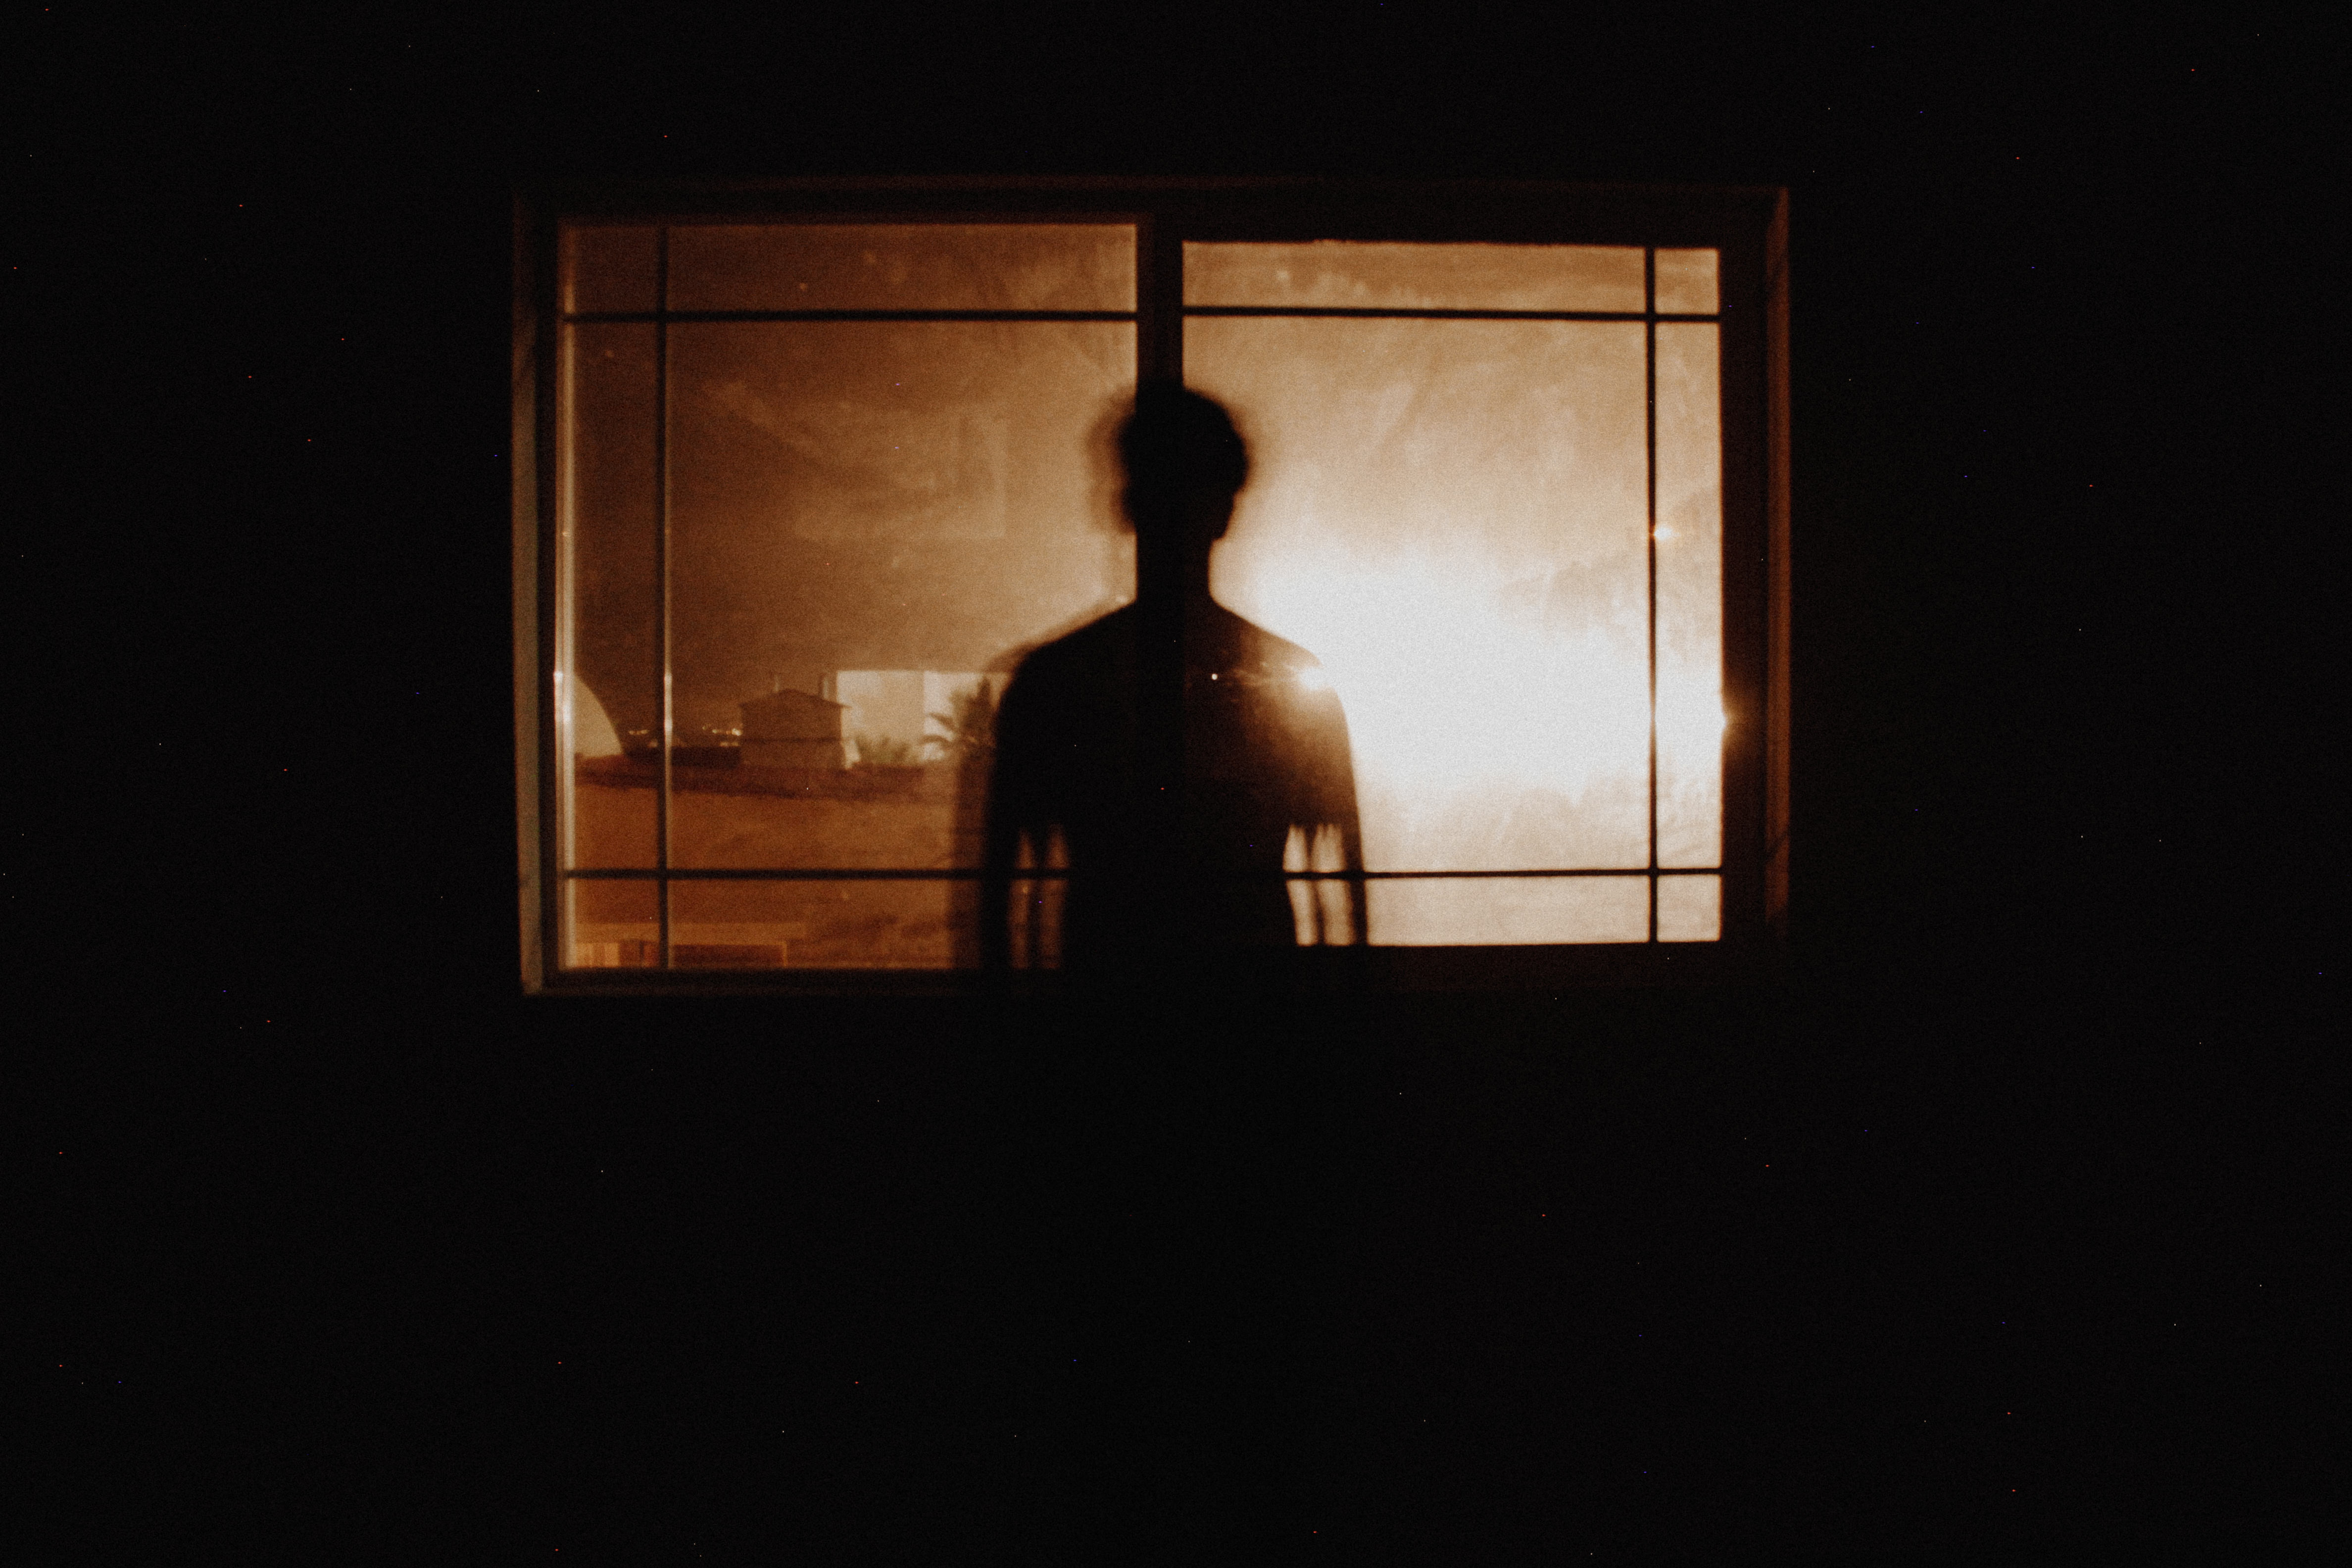 σιλουέτα ατόμου πίσω από ένα παράθυρο σε ένα σκοτεινό δωμάτιο έχει σημάδια συναισθηματικής κακοποίησης που πολλοί δεν αναγνωρίζουν